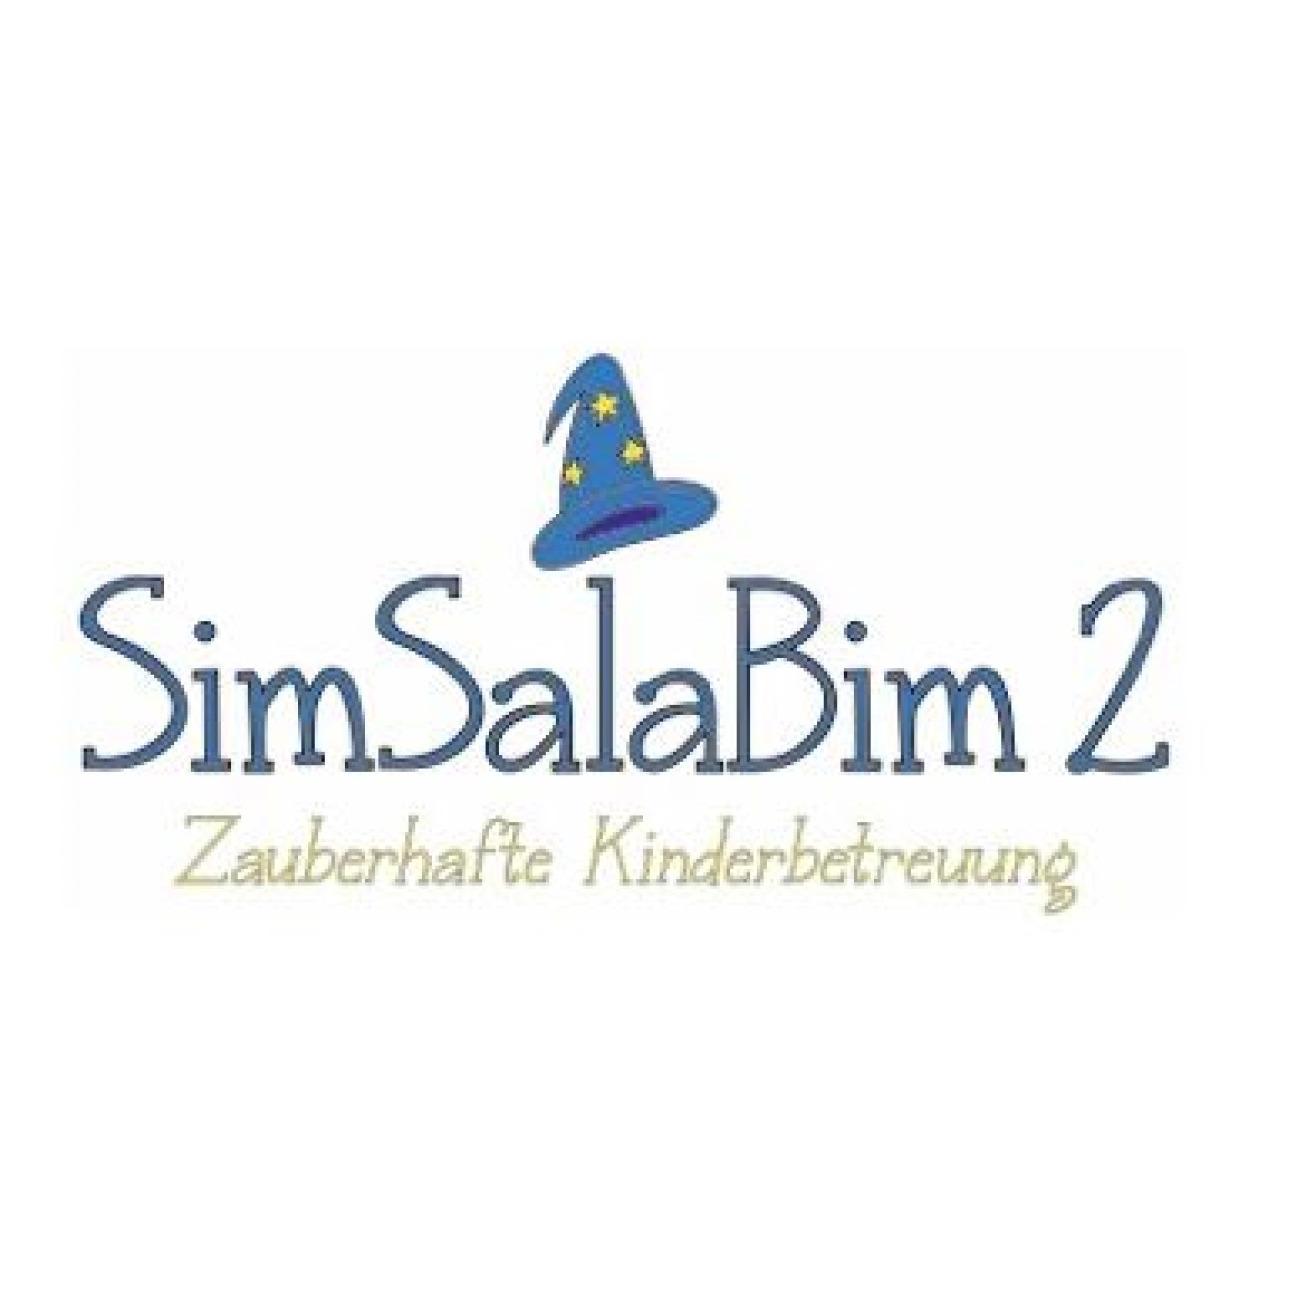 Krabbelstube Simsalabim II Logo